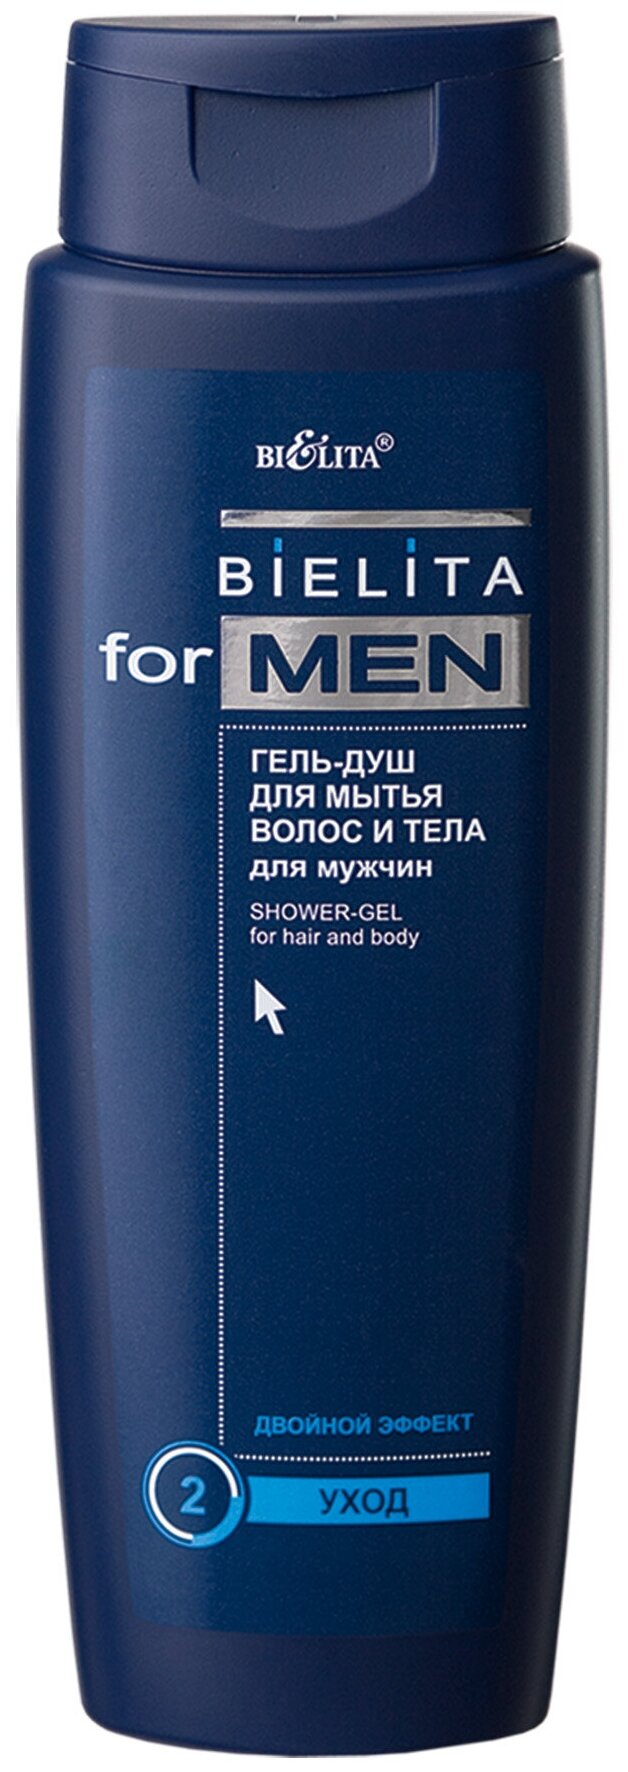 Bielita Гель для душа Bielita for men для волос и тела